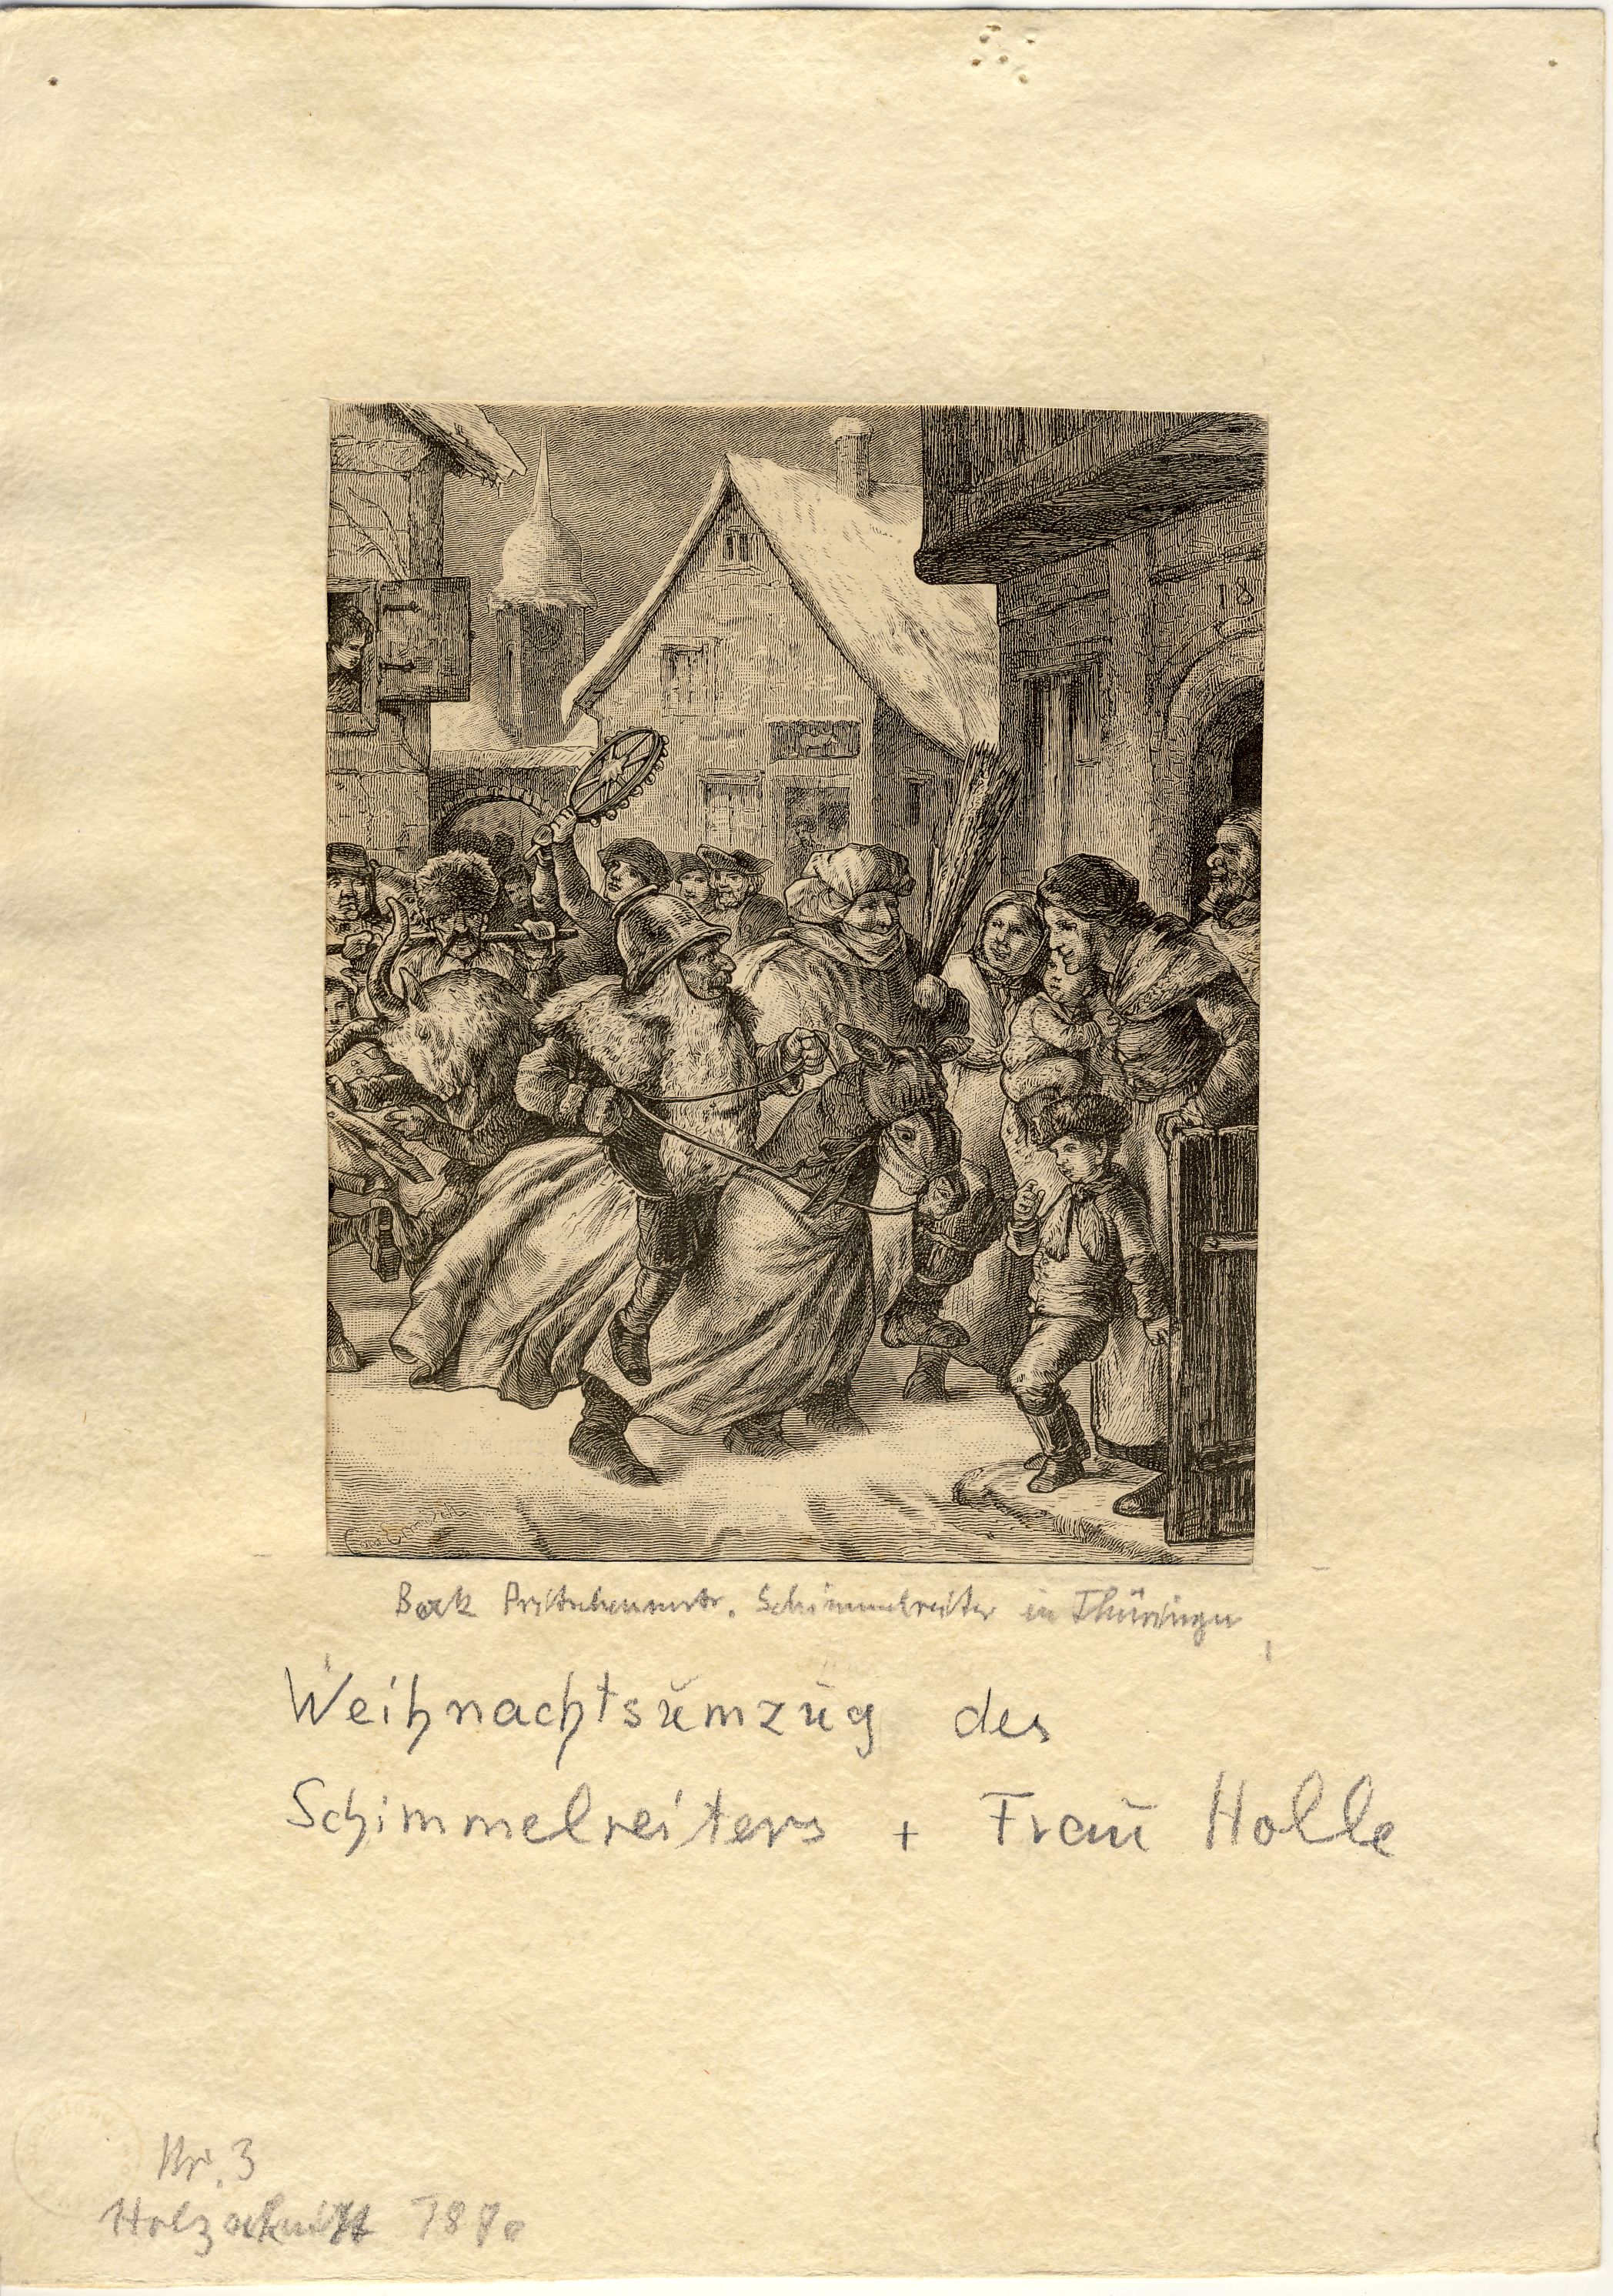 Weihnachtsumzug des Schimmelreiters und Frau Holle Zeitungsillustration (Deutsches Märchen- und Wesersagenmuseum CC BY-NC-SA)